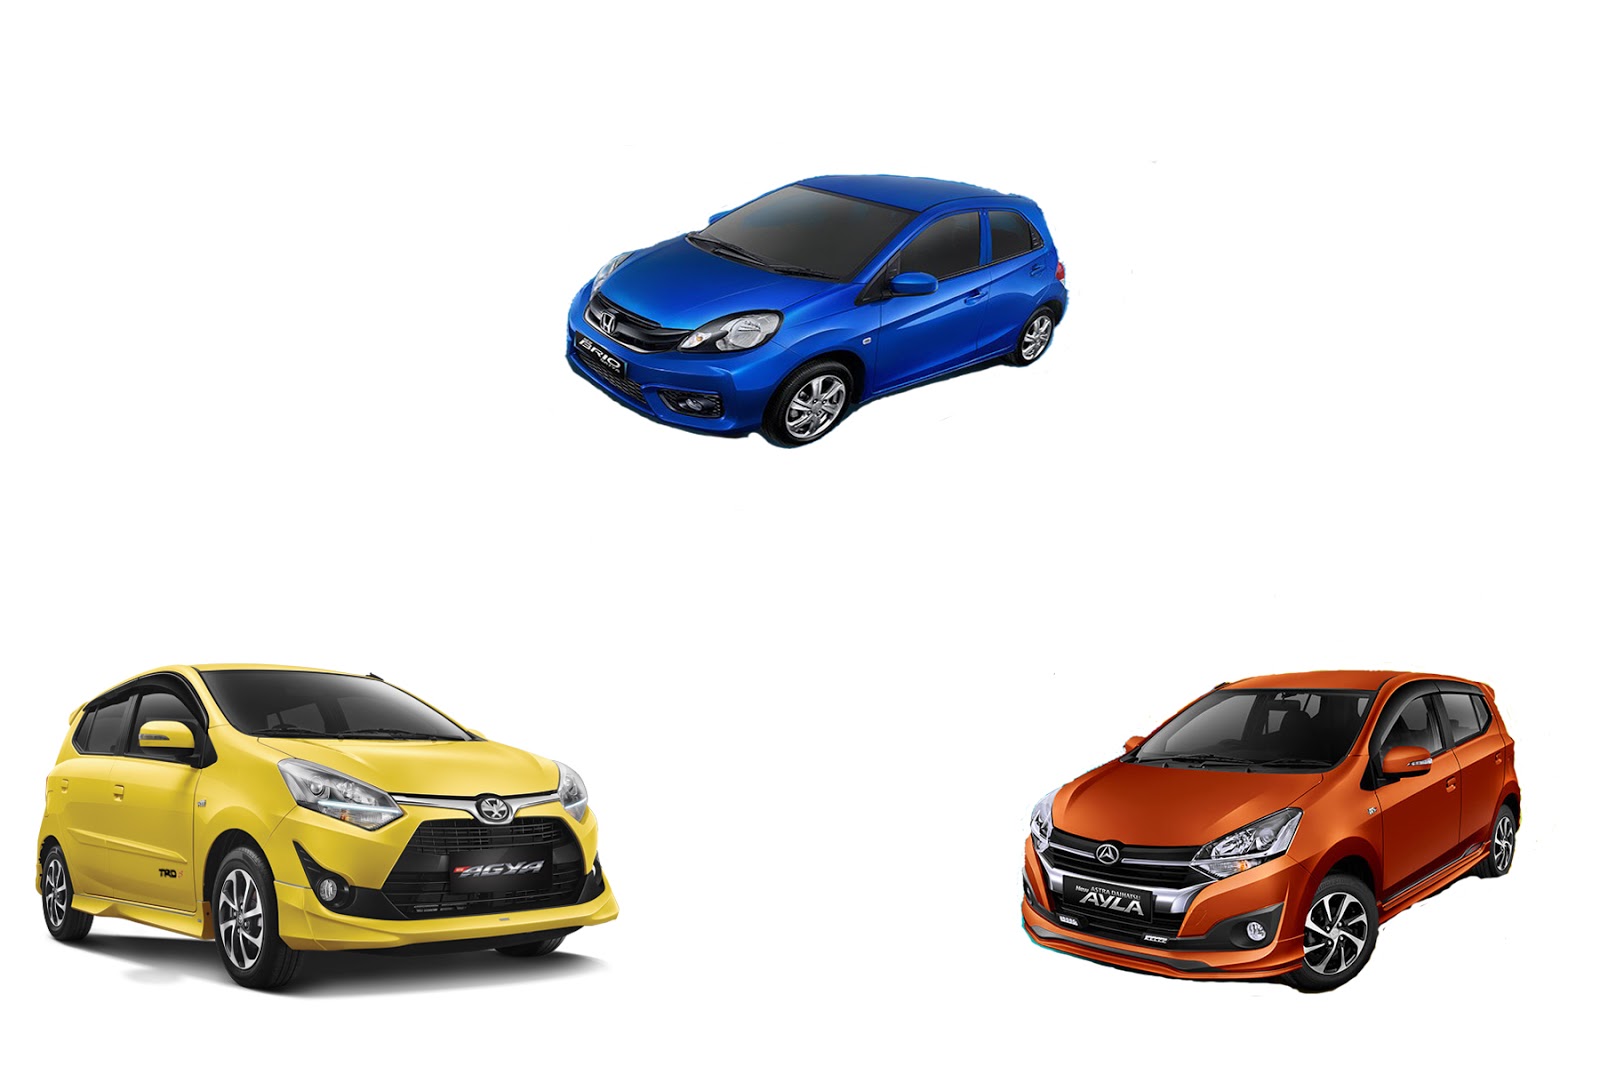 Adu Keunggulan Dan Kelebihan New Toyota Agya Vs New Daihatsu Ayla Vs